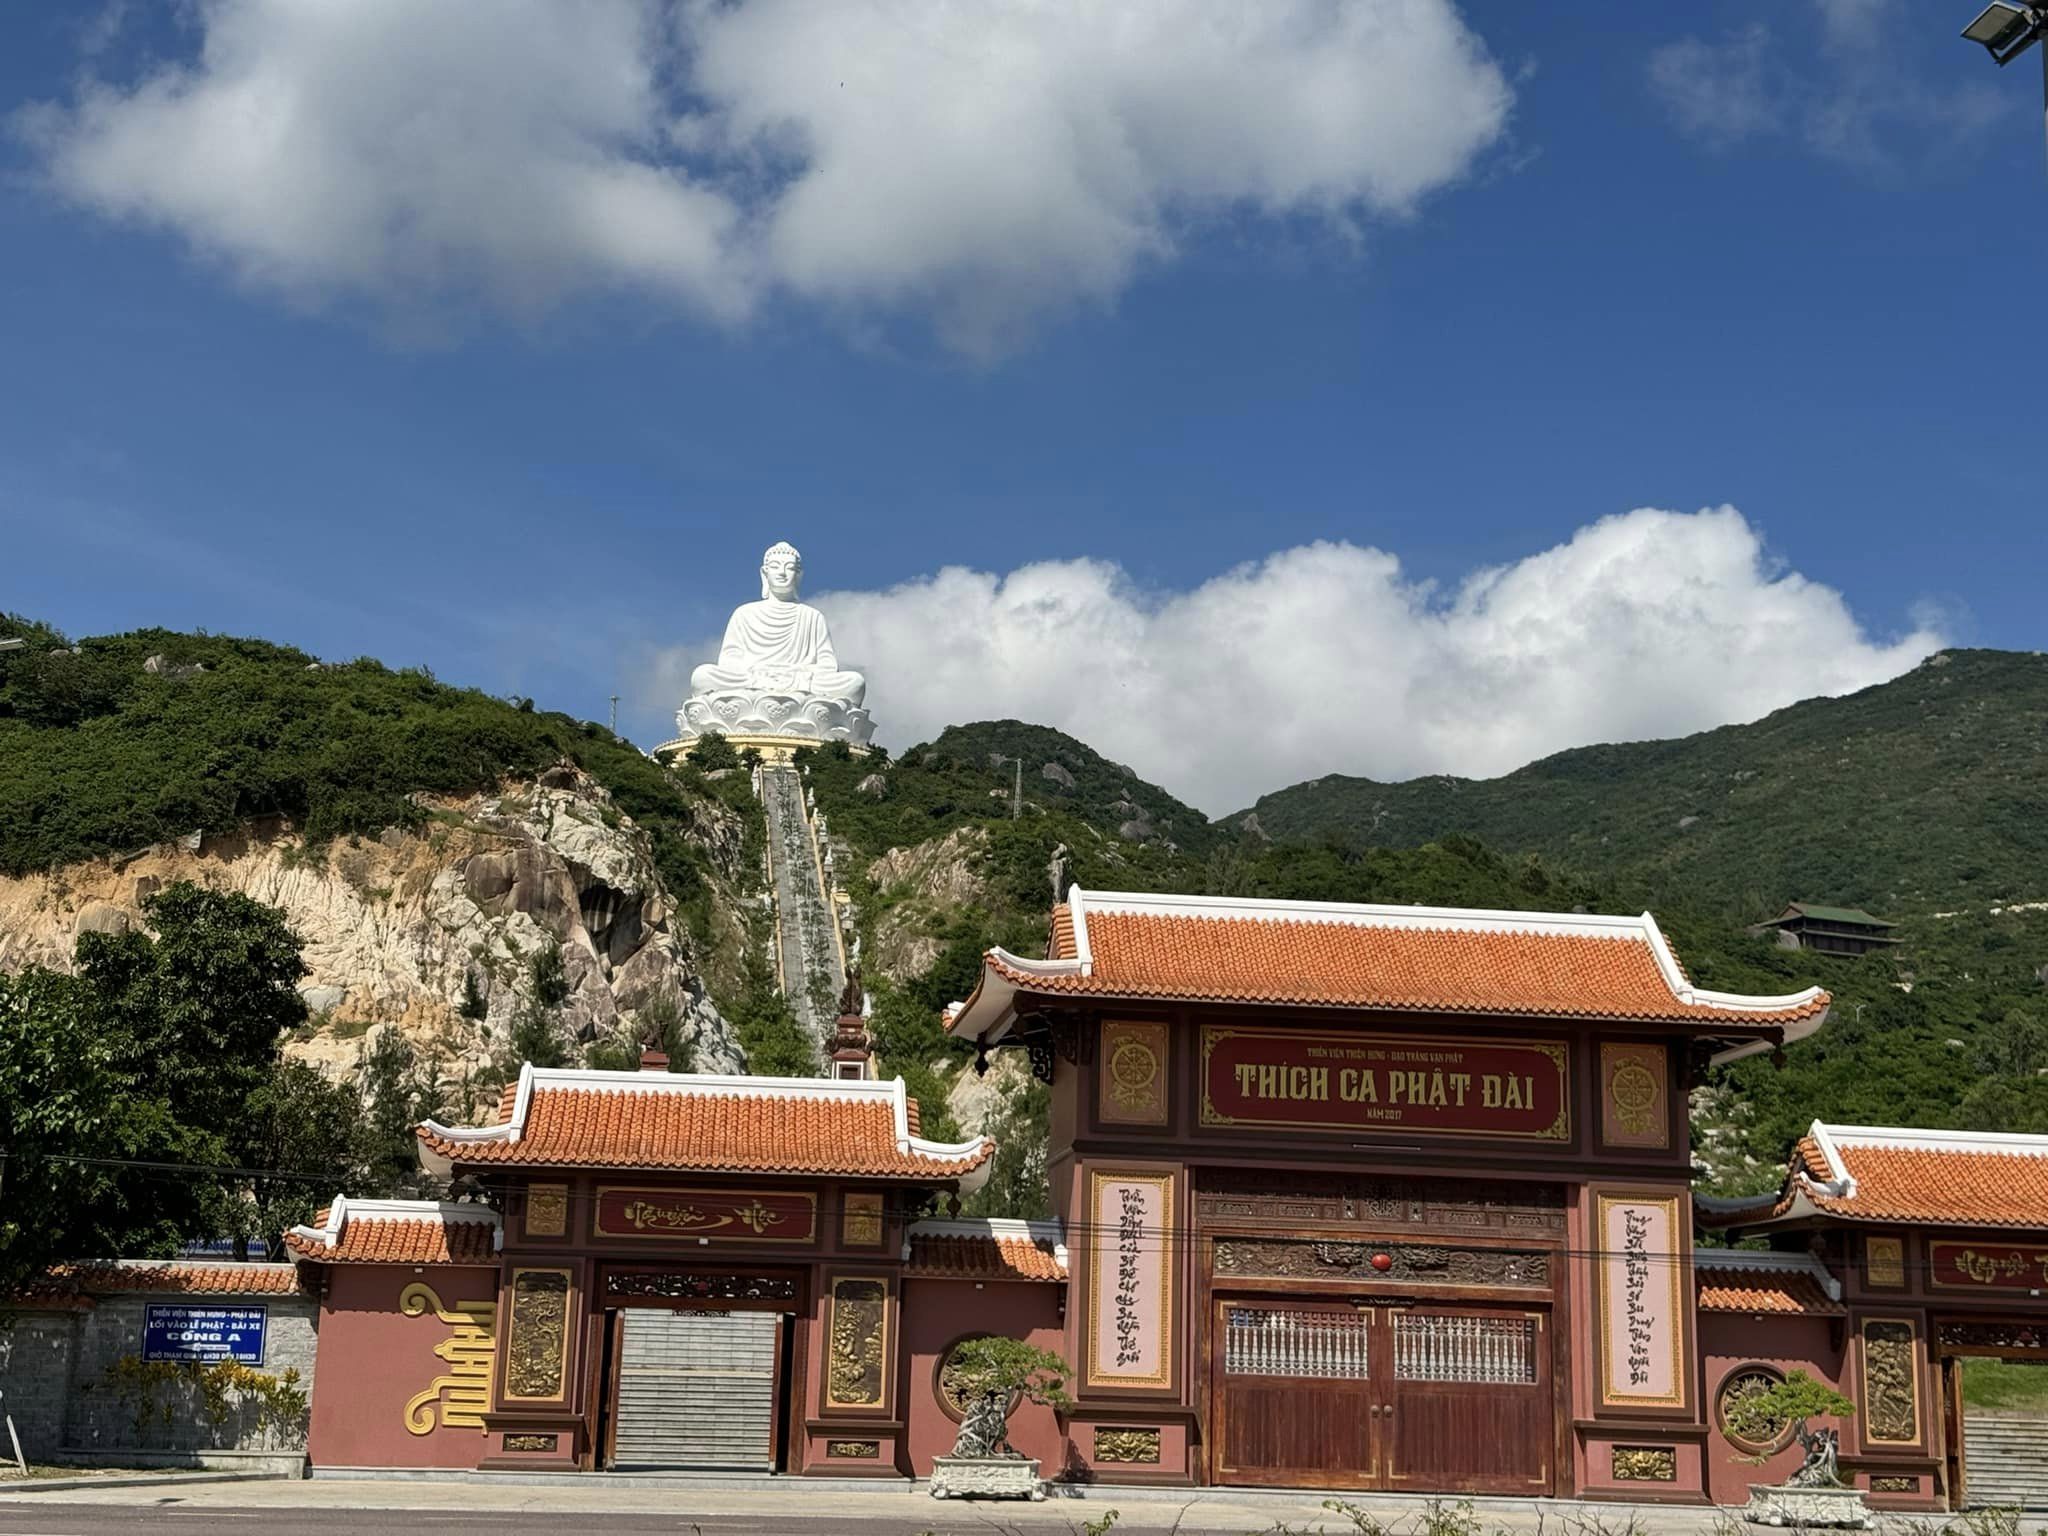 Đường lên tượng Phật khoảng 600 bậc thang, chùa có hỗ trợ đưa rước bằng xe máy lên tượng Phật cho những cô chú lớn tuổi muốn lên đỉnh núi lễ Phật (có thu phí 60k lên và 40k xuống).Một điểm tham quan, vãn cảnh không thể bỏ lỡ khi đến với cùng đất Quy Nhơn - Bình Định